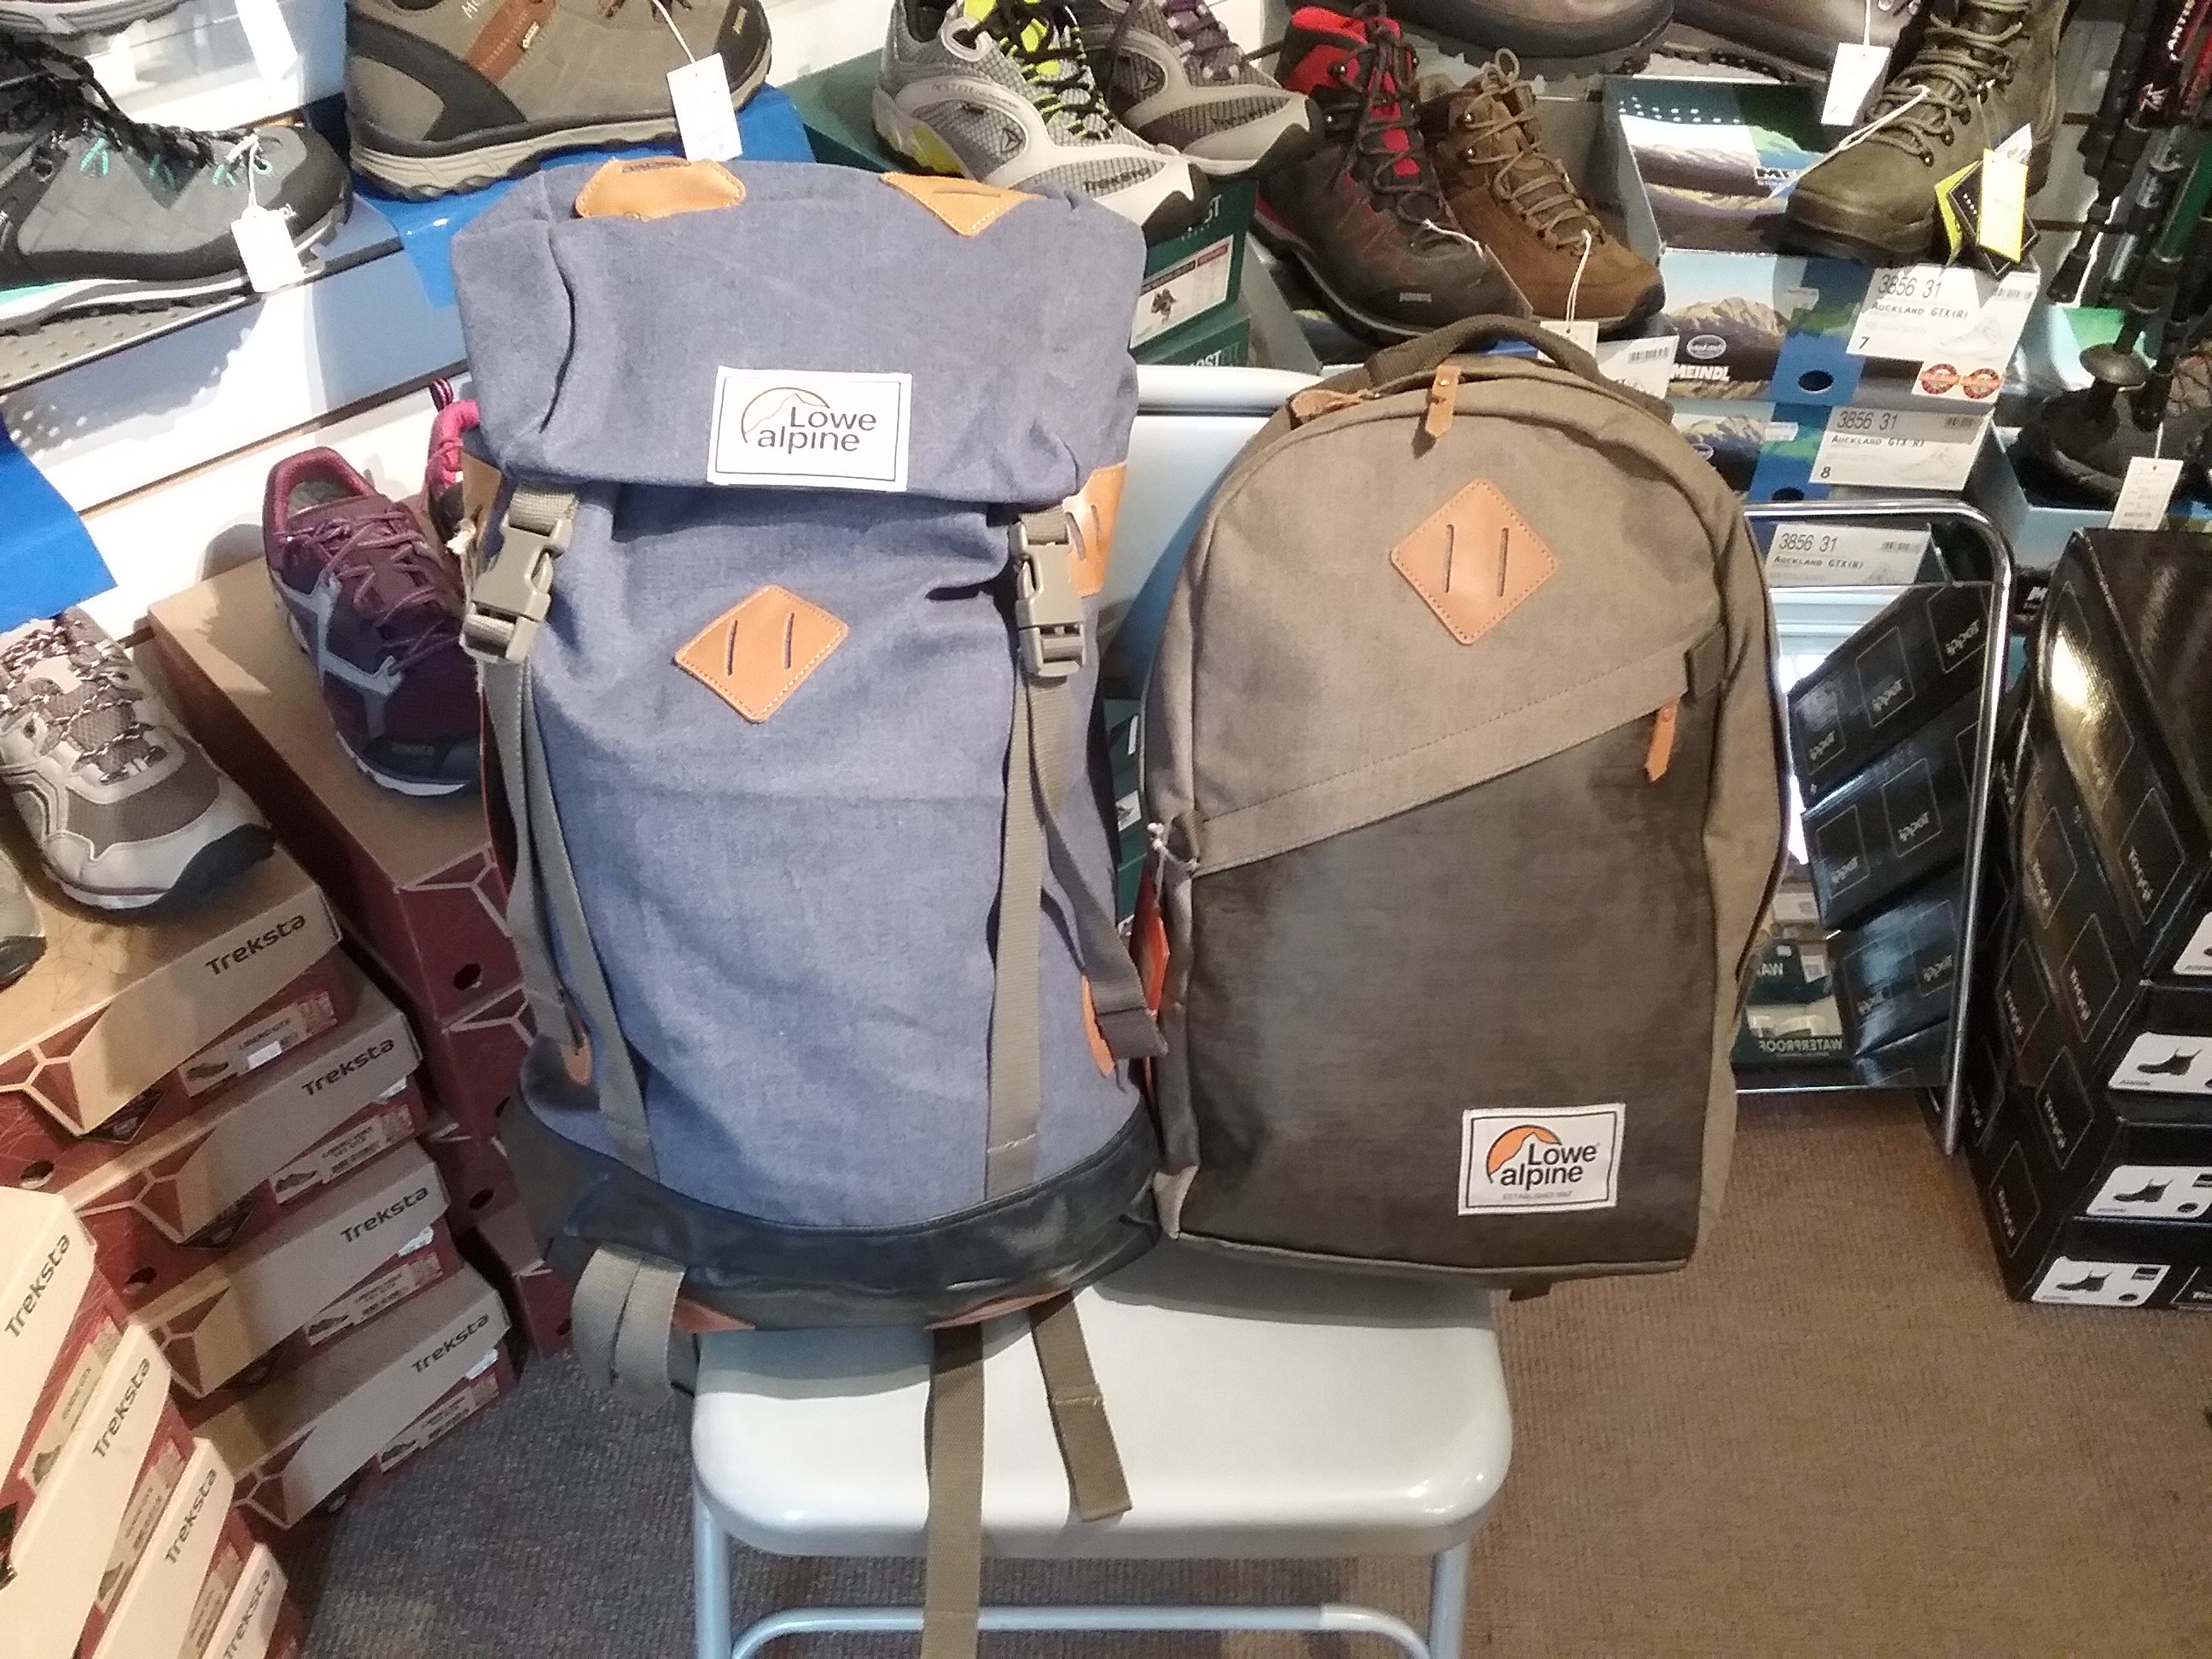 تويتر \ Morston تويتر: "Two new retro bag designs from Lowe Alpine. The adventurer and klettersack 30 in blue and brownstone! #retro #pack #bag #backpack https://t.co/u8M4GtYLuq"